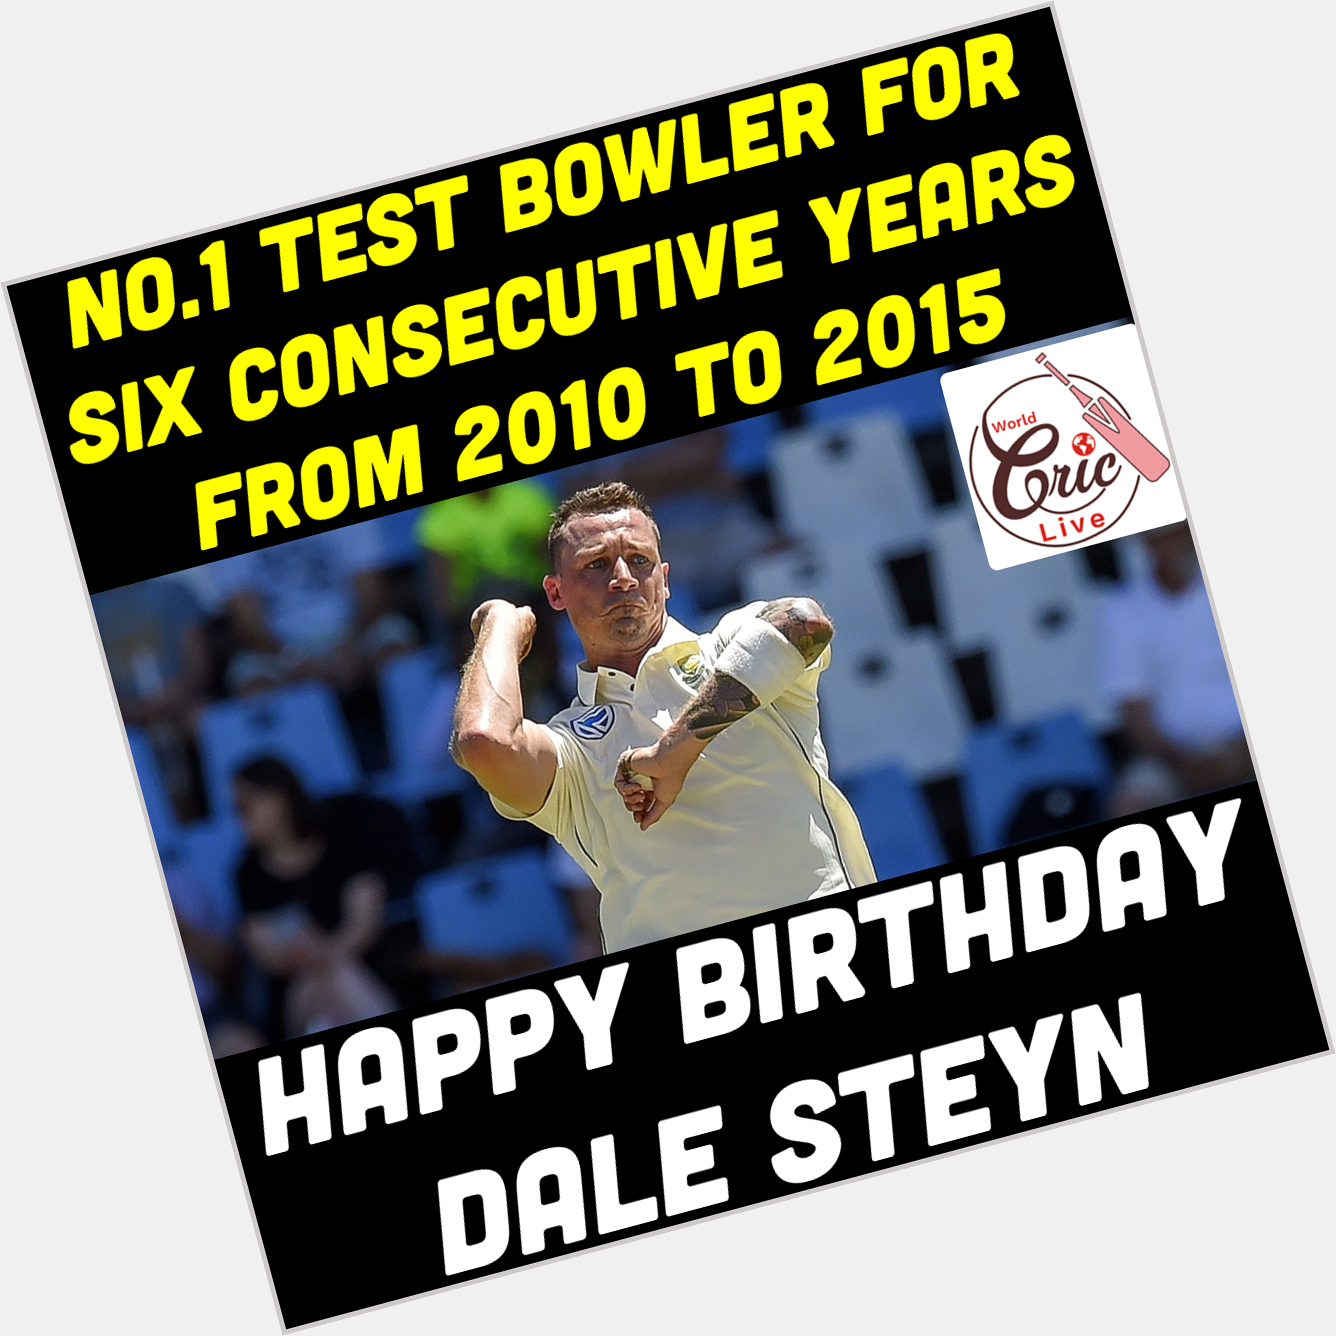 Happy Birthday Dale Steyn  